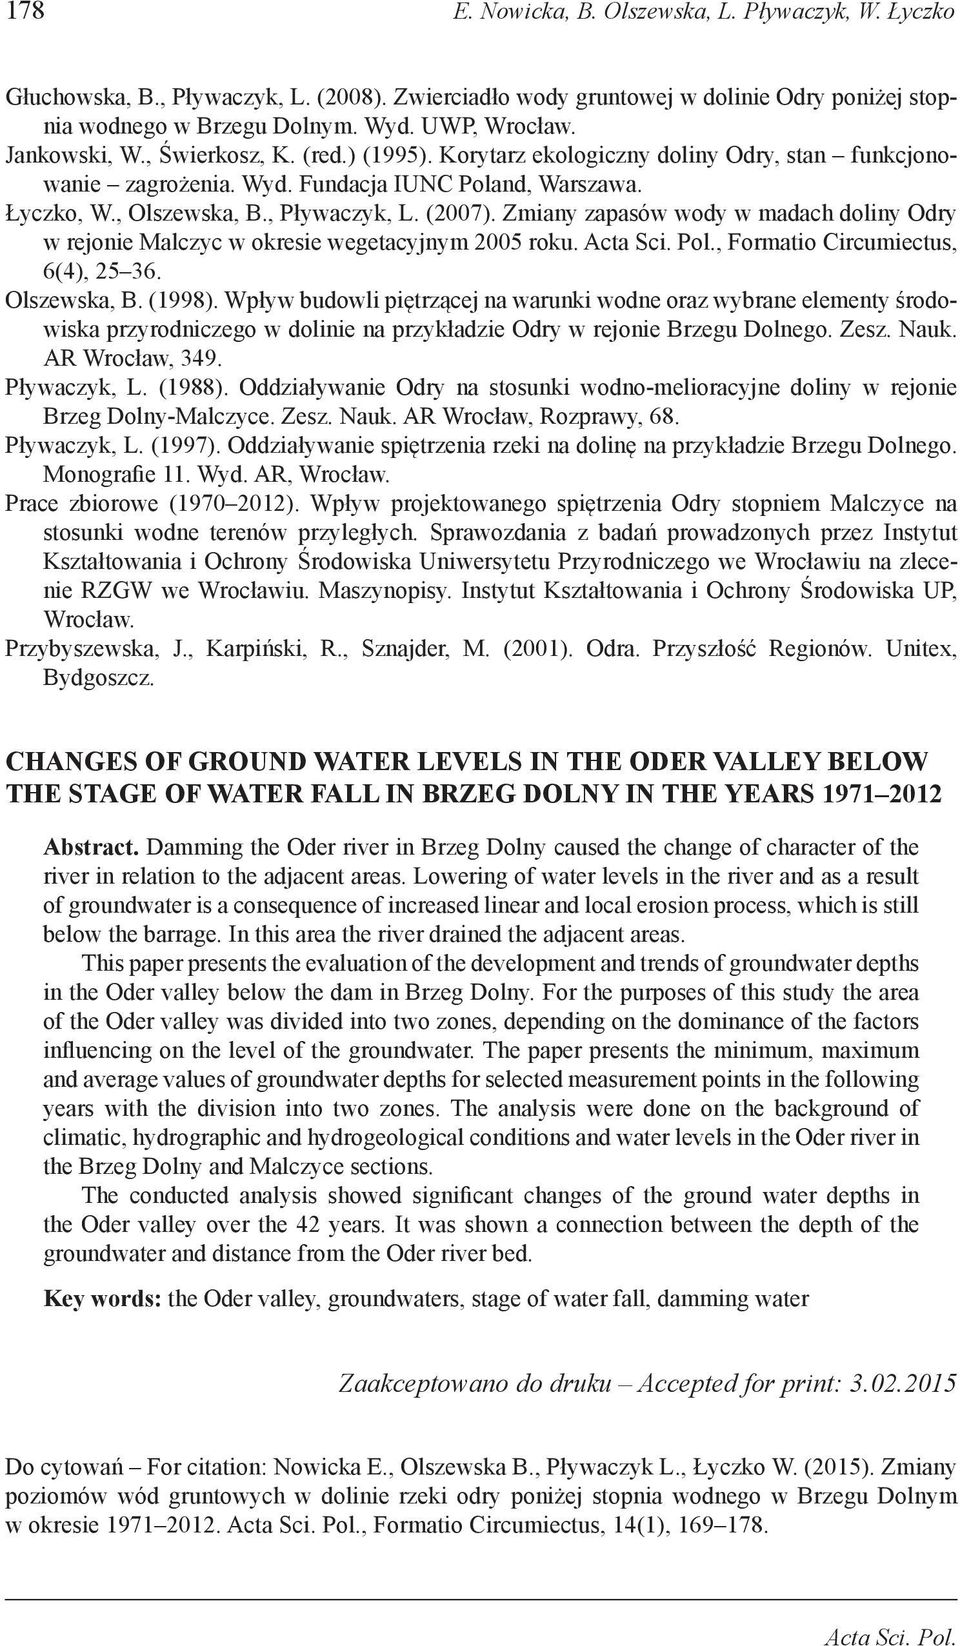 Zmiany zapasów wody w madach doliny Odry w rejonie Malczyc w okresie wegetacyjnym 2005 roku. Acta Sci. Pol., Formatio Circumiectus, 6(4), 25 36. Olszewska, B. (1998).